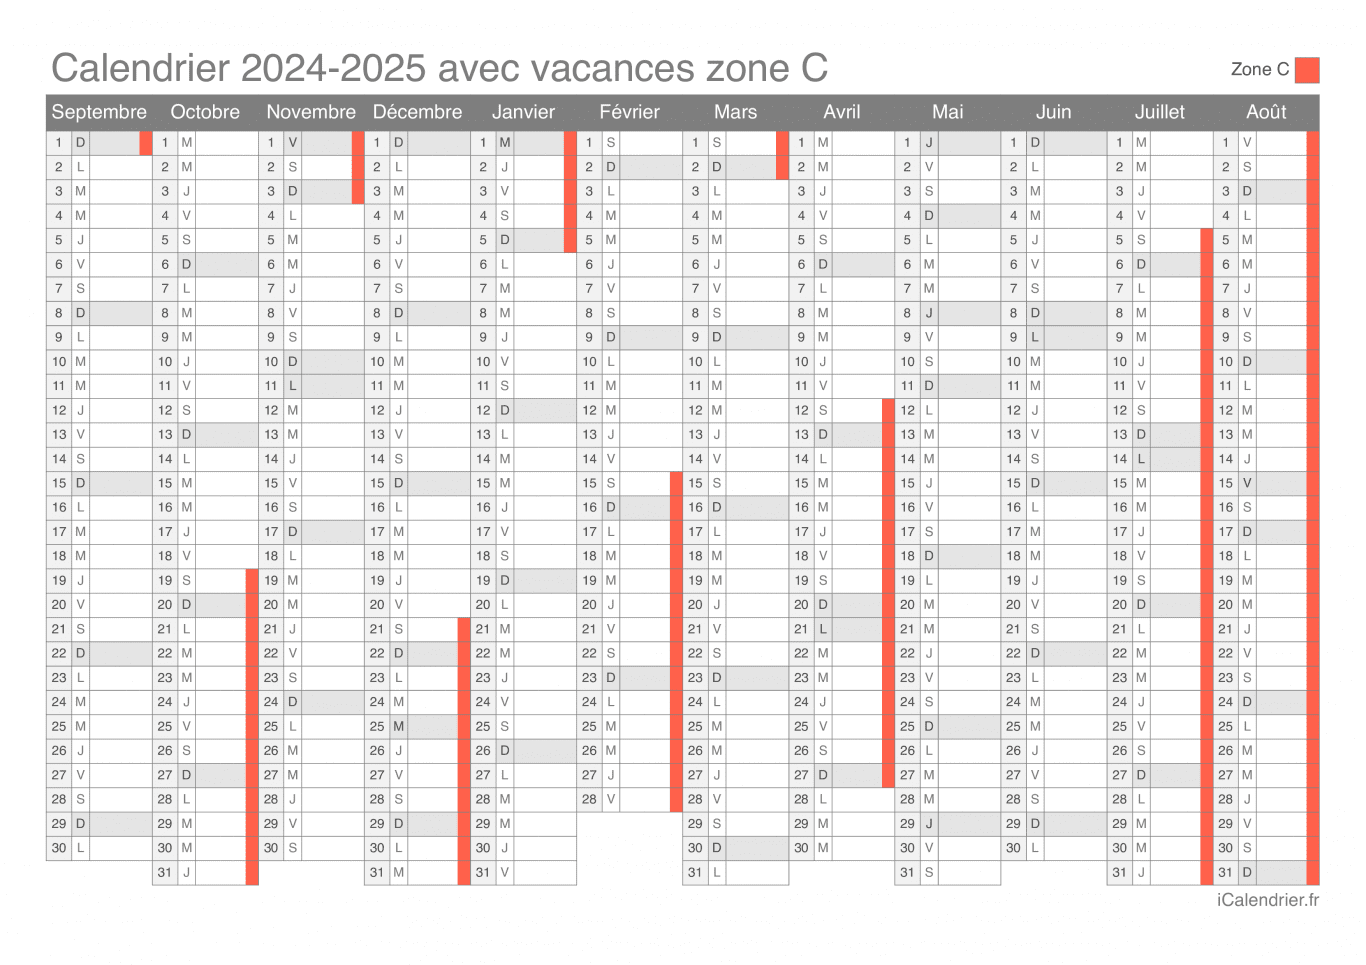 Calendrier des vacances scolaires 2024-2025 de la zone C